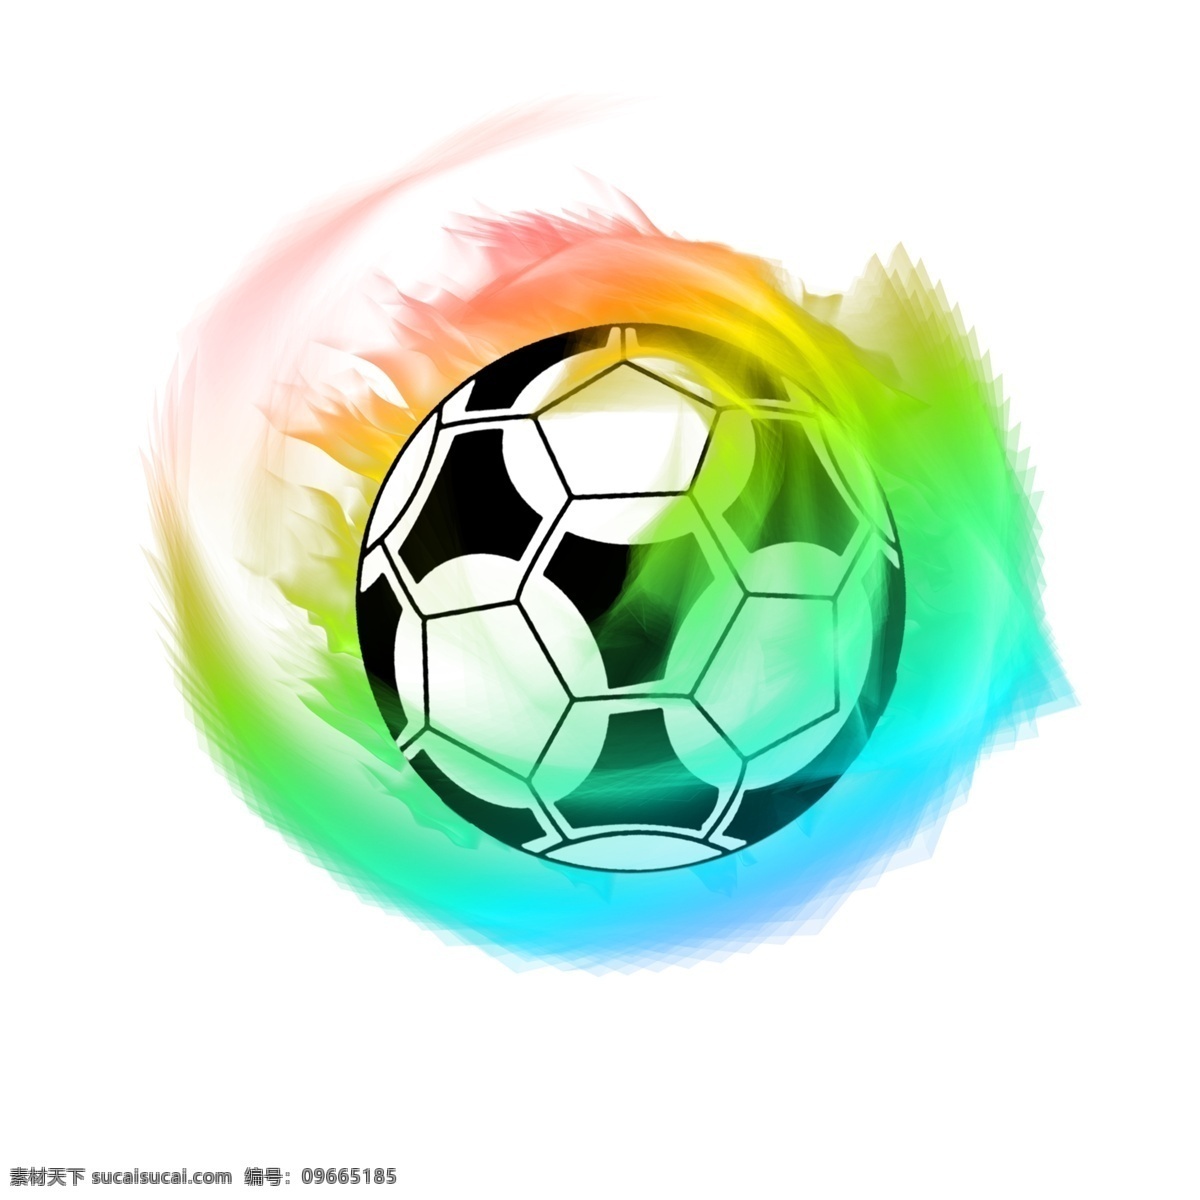 2018 世界杯 足球 炫 酷 彩色 火焰 运动 体育 彩色足球 俄罗斯 激情 特效 超酷 足球装饰